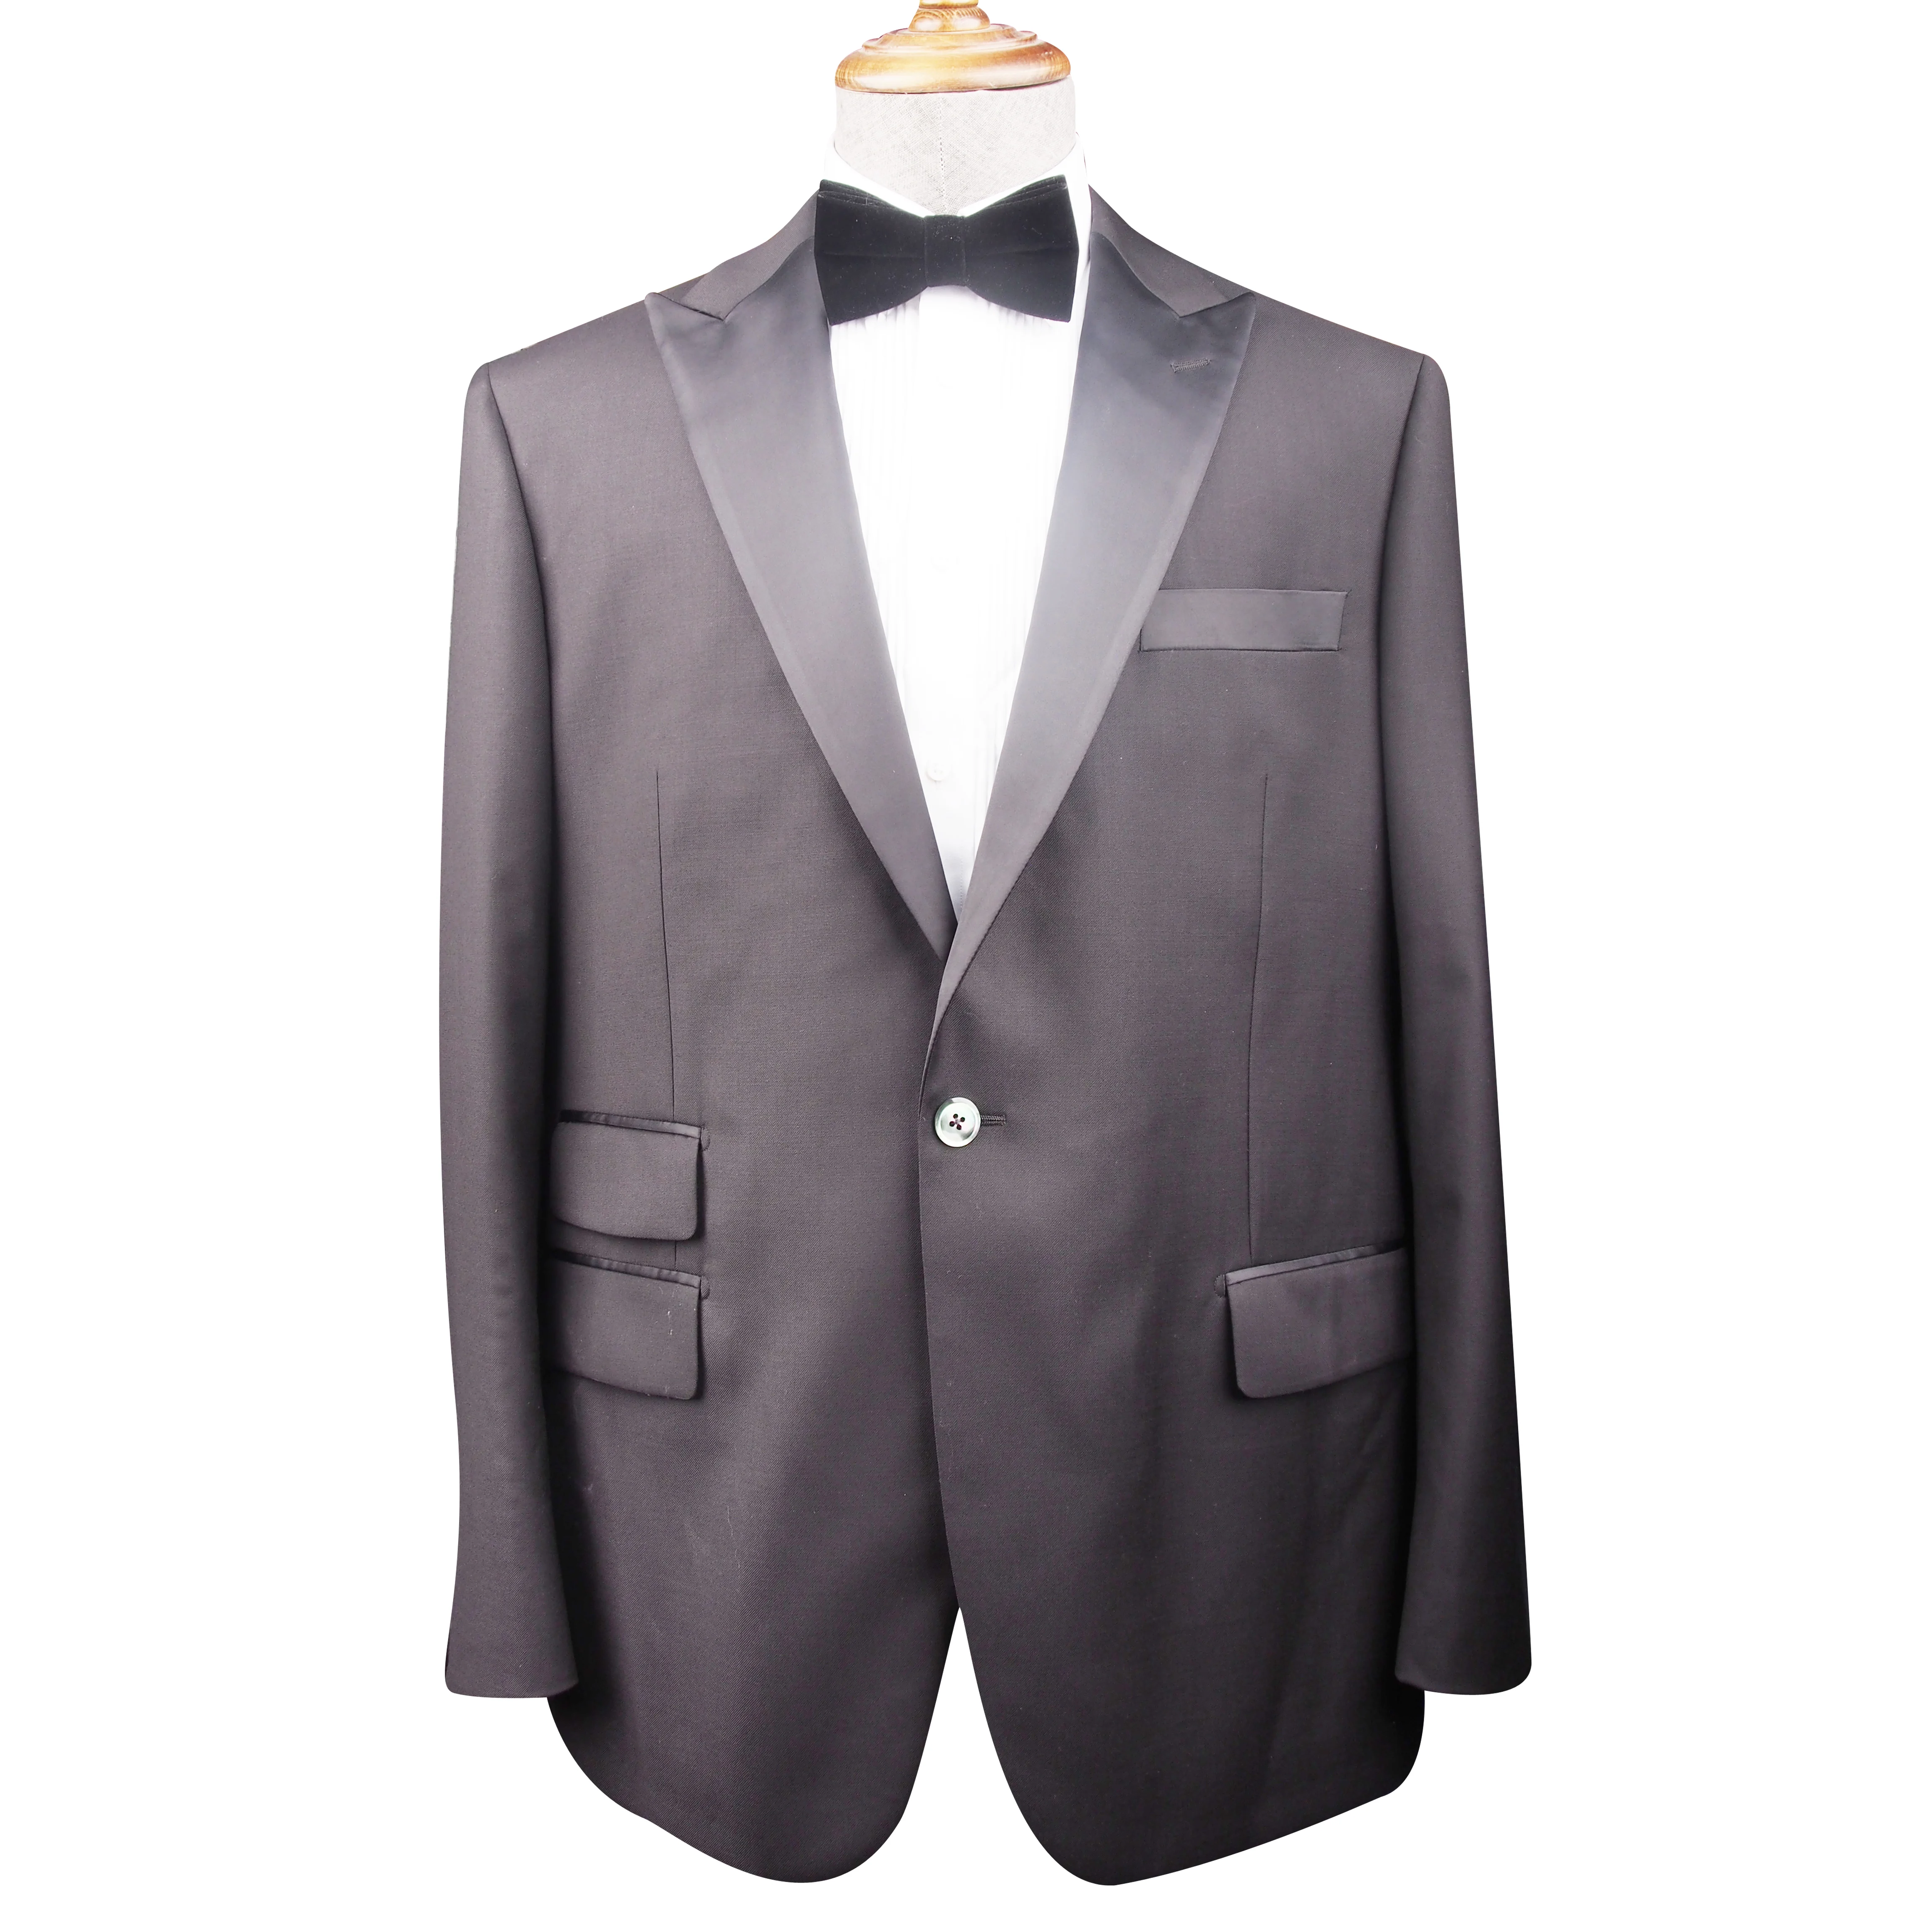 made in China wholesale 2 stukken 100% Wool  Tuxedo Suit modern men’s suit